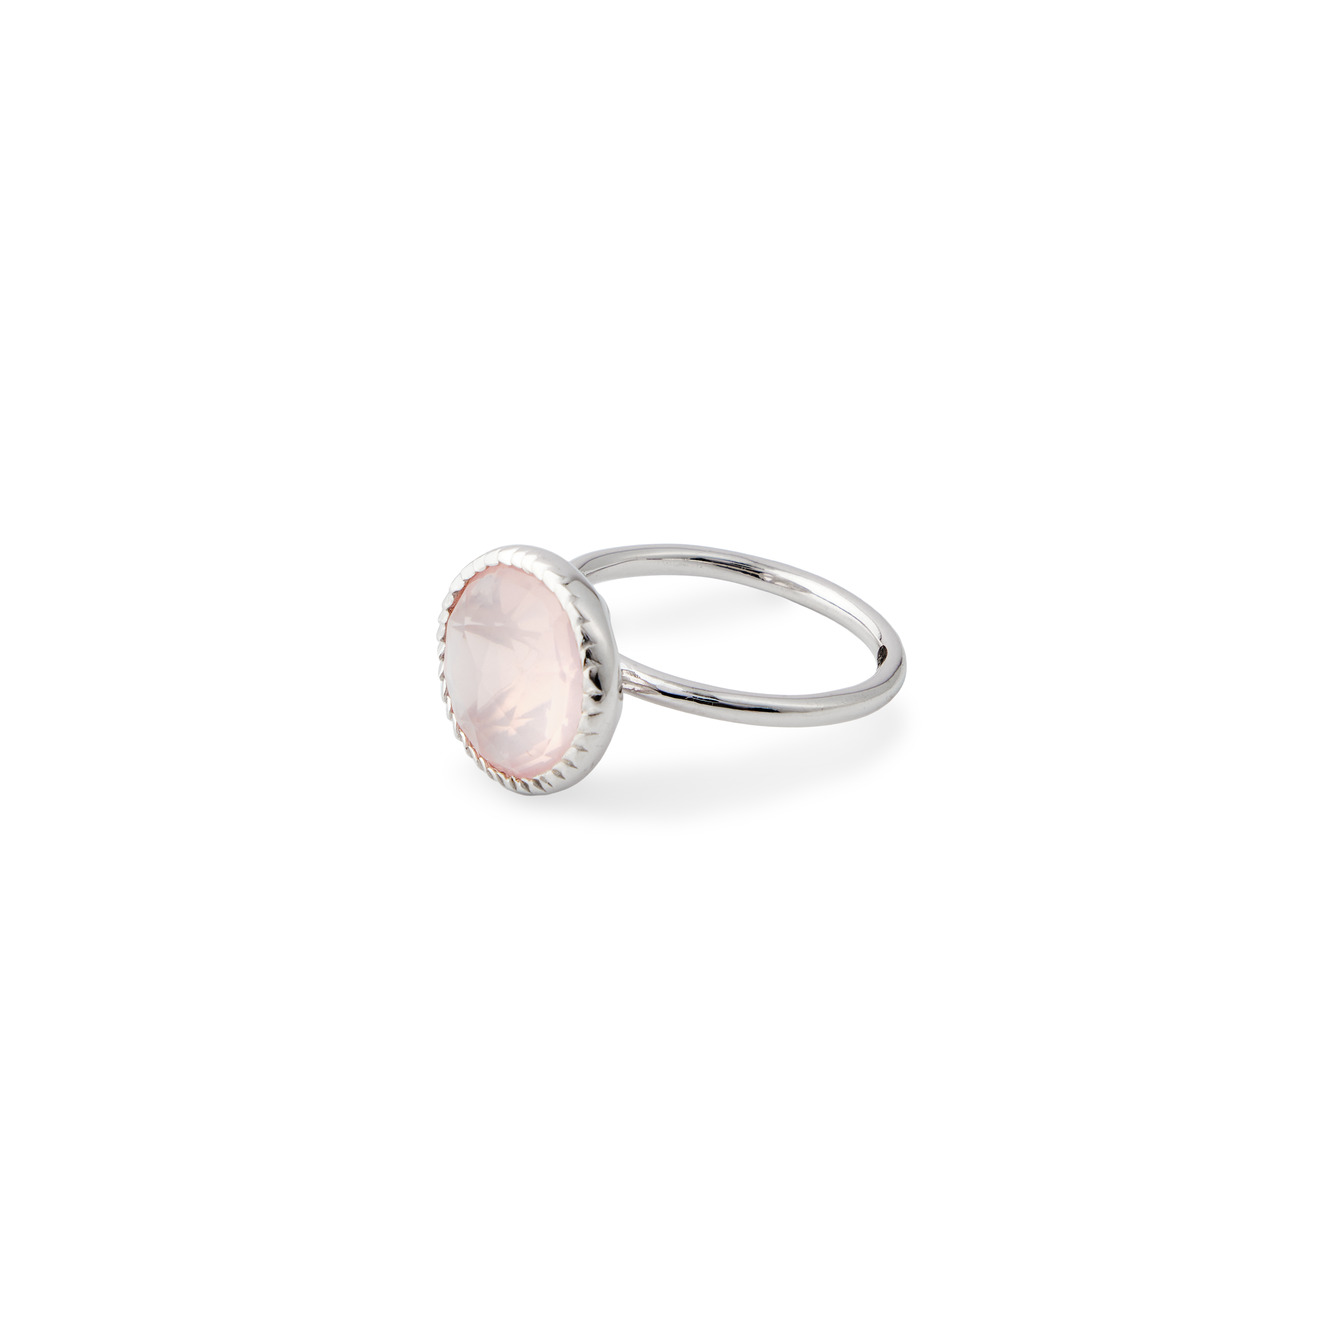 Wisteria Gems Серебряное кольцо тонкое с крупным розовым кварцем wisteria gems серебряные серьги из серебра с прямоугольным розовым кварцем